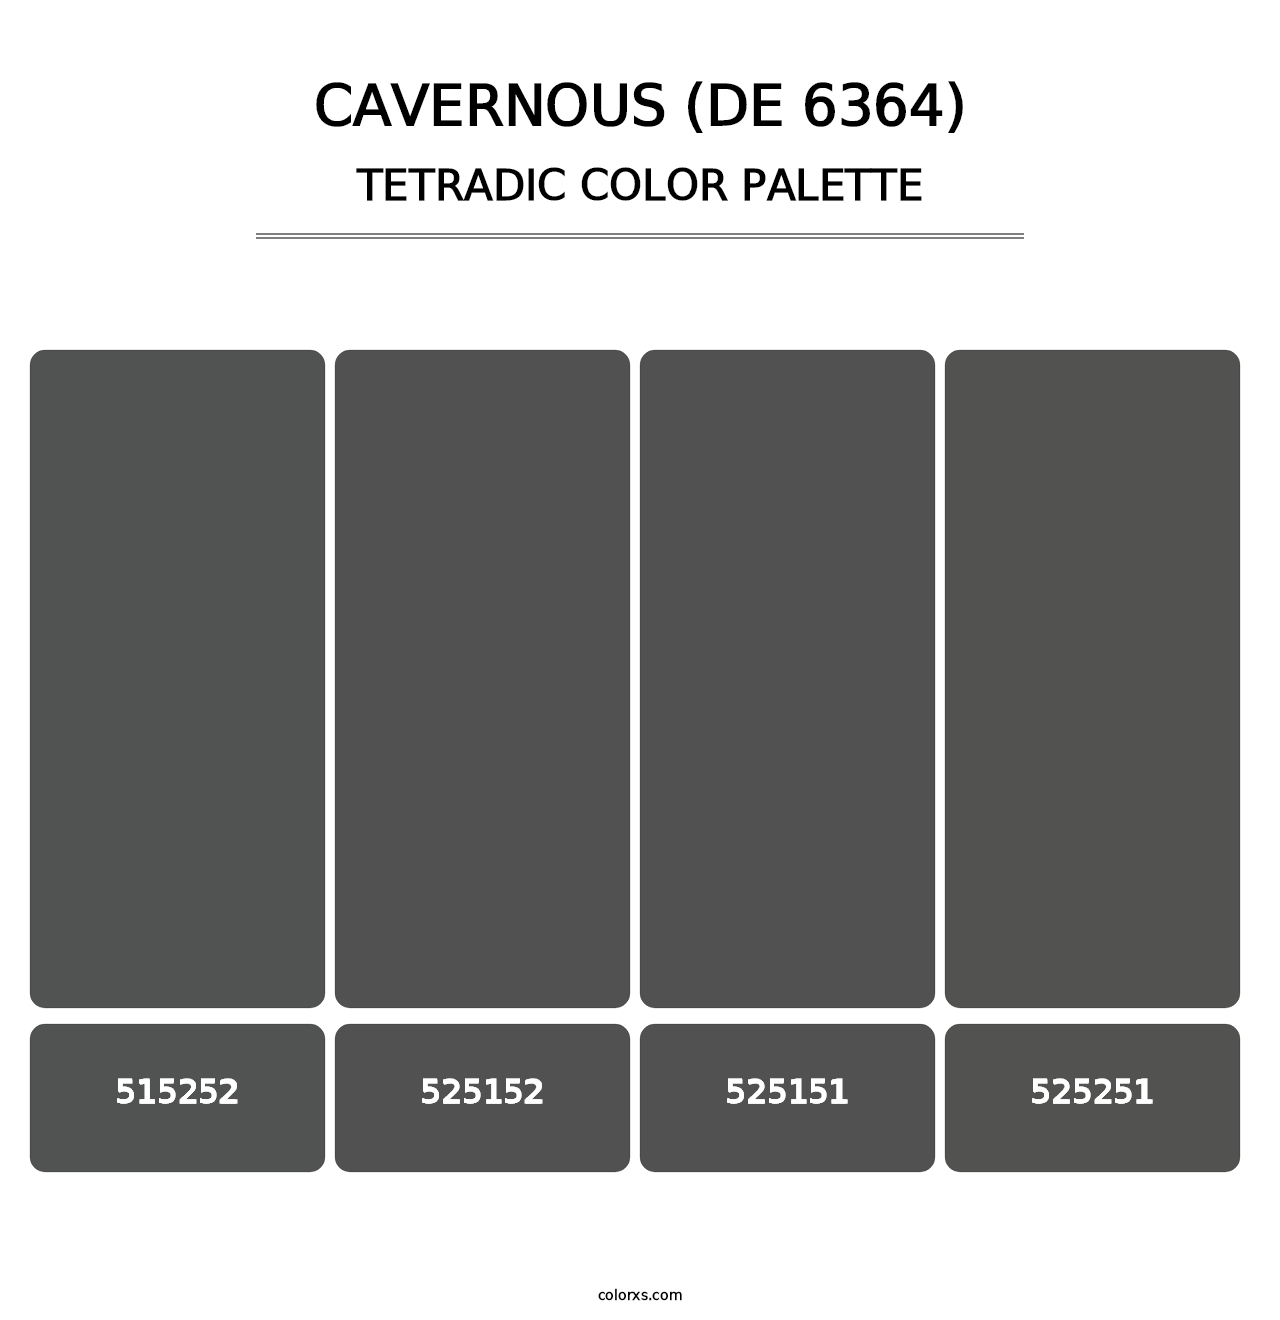 Cavernous (DE 6364) - Tetradic Color Palette